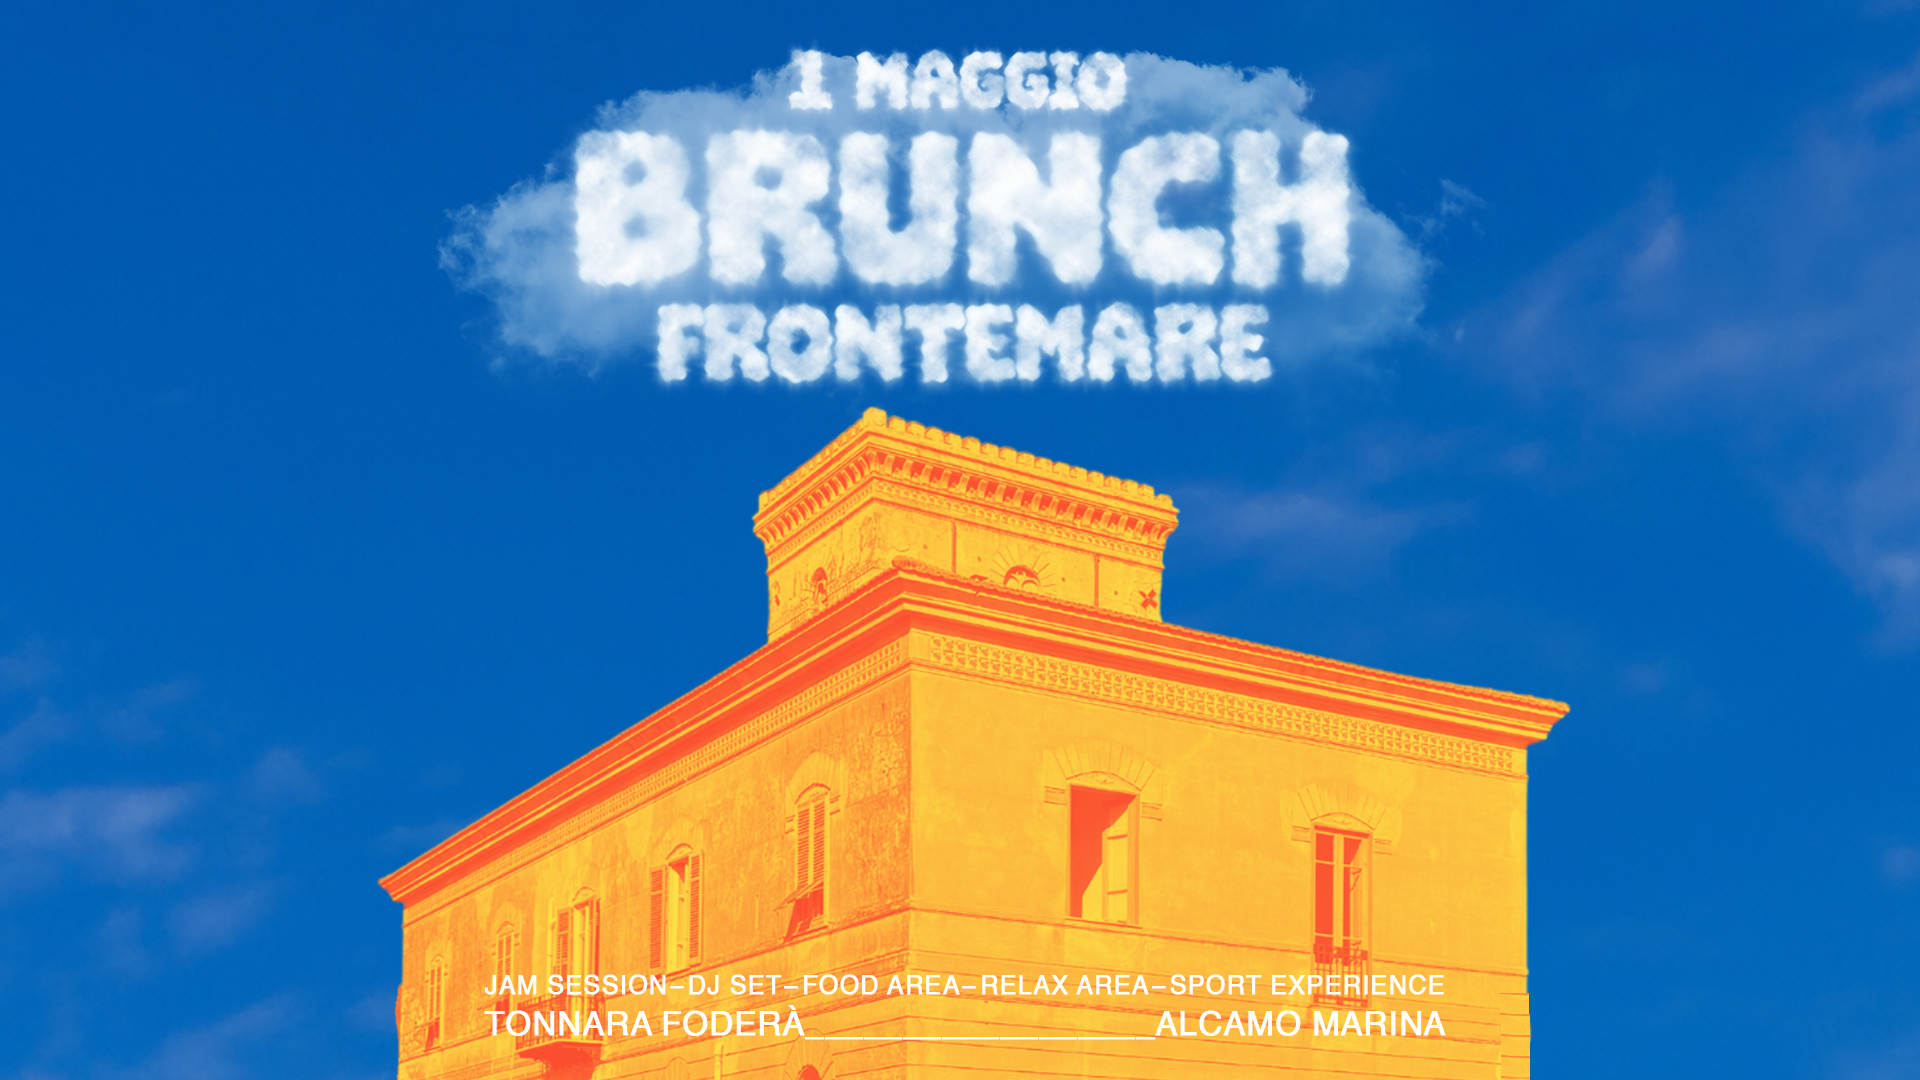 BRUNCH FRONTEMARE - 1 Maggio - フライヤー表